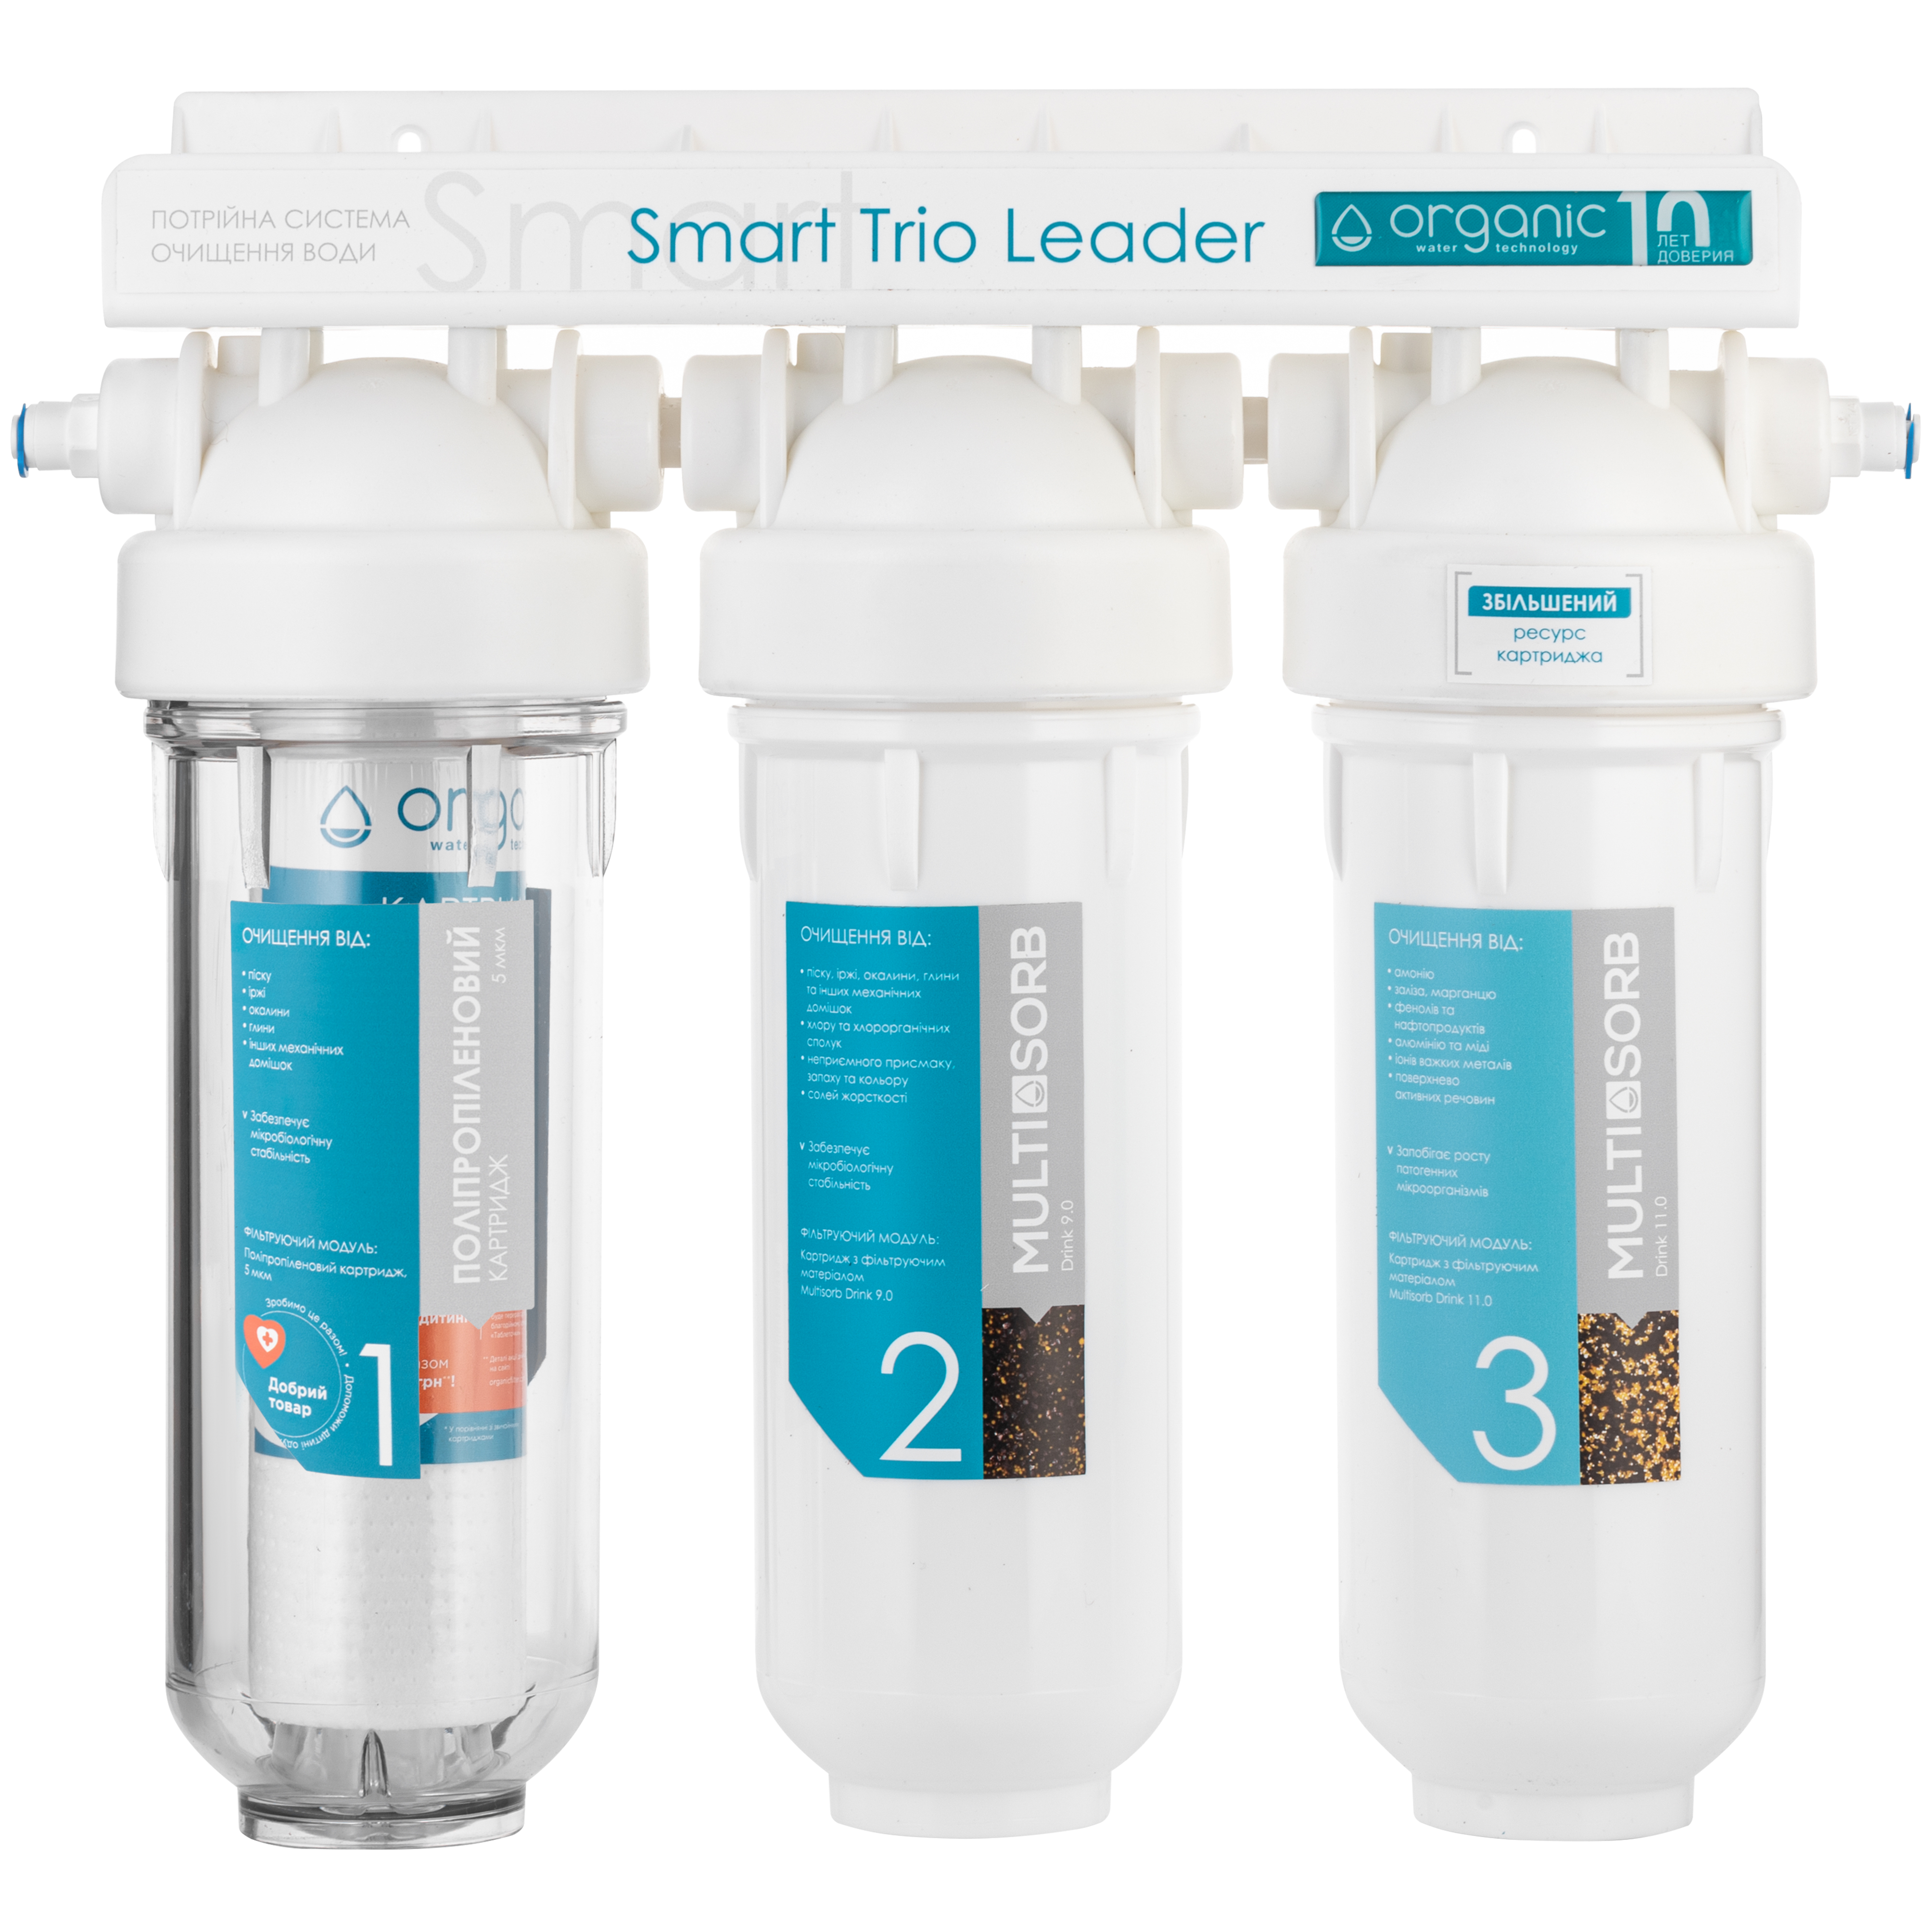 Отзывы трехступенчатый фильтр для воды Organic Smart TRIO LEADER в Украине